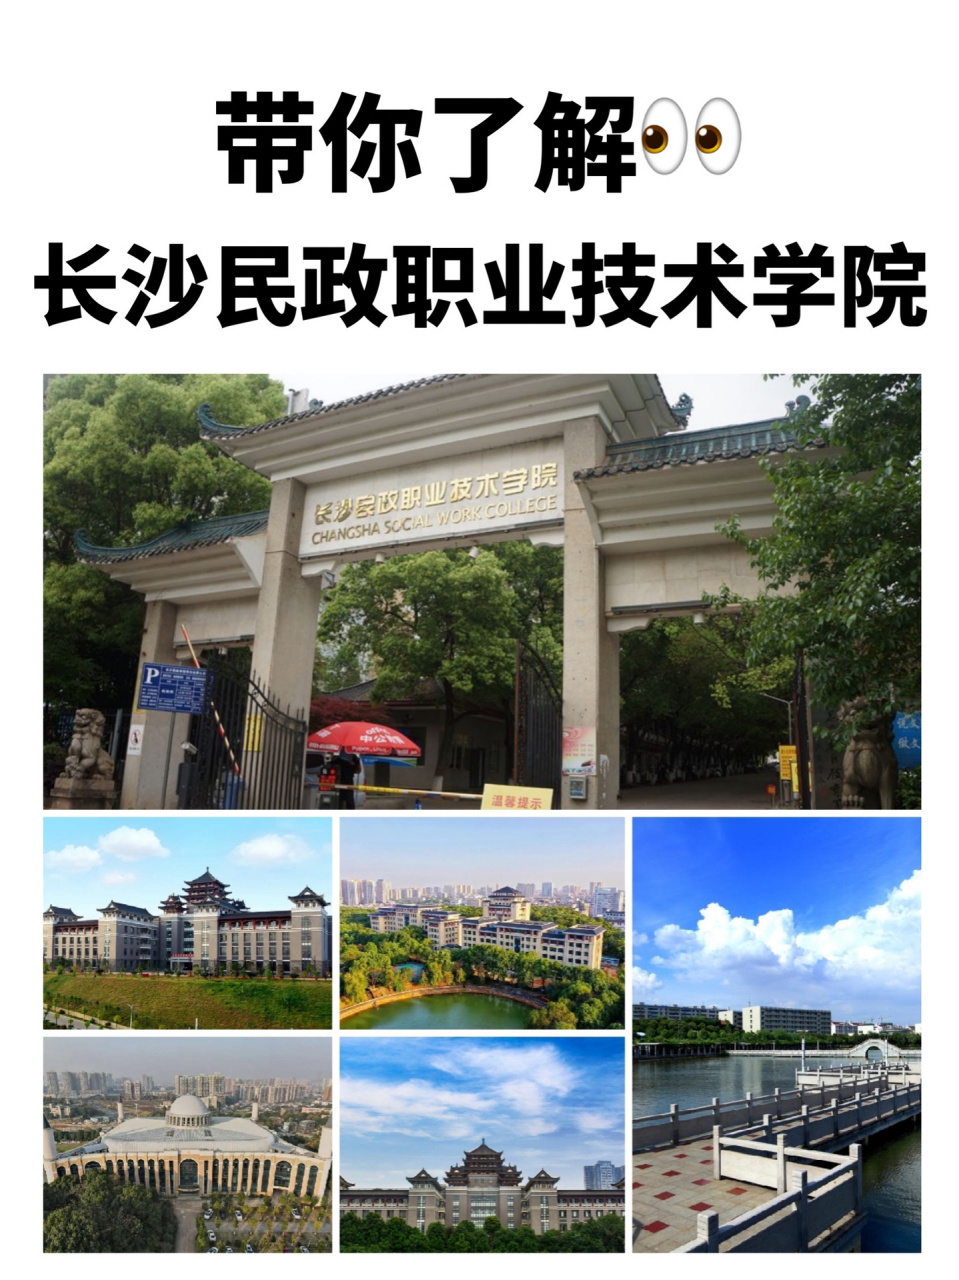 长沙民政职业技术学院 民政部与湖南省人民政府共建的一所高校,专业设